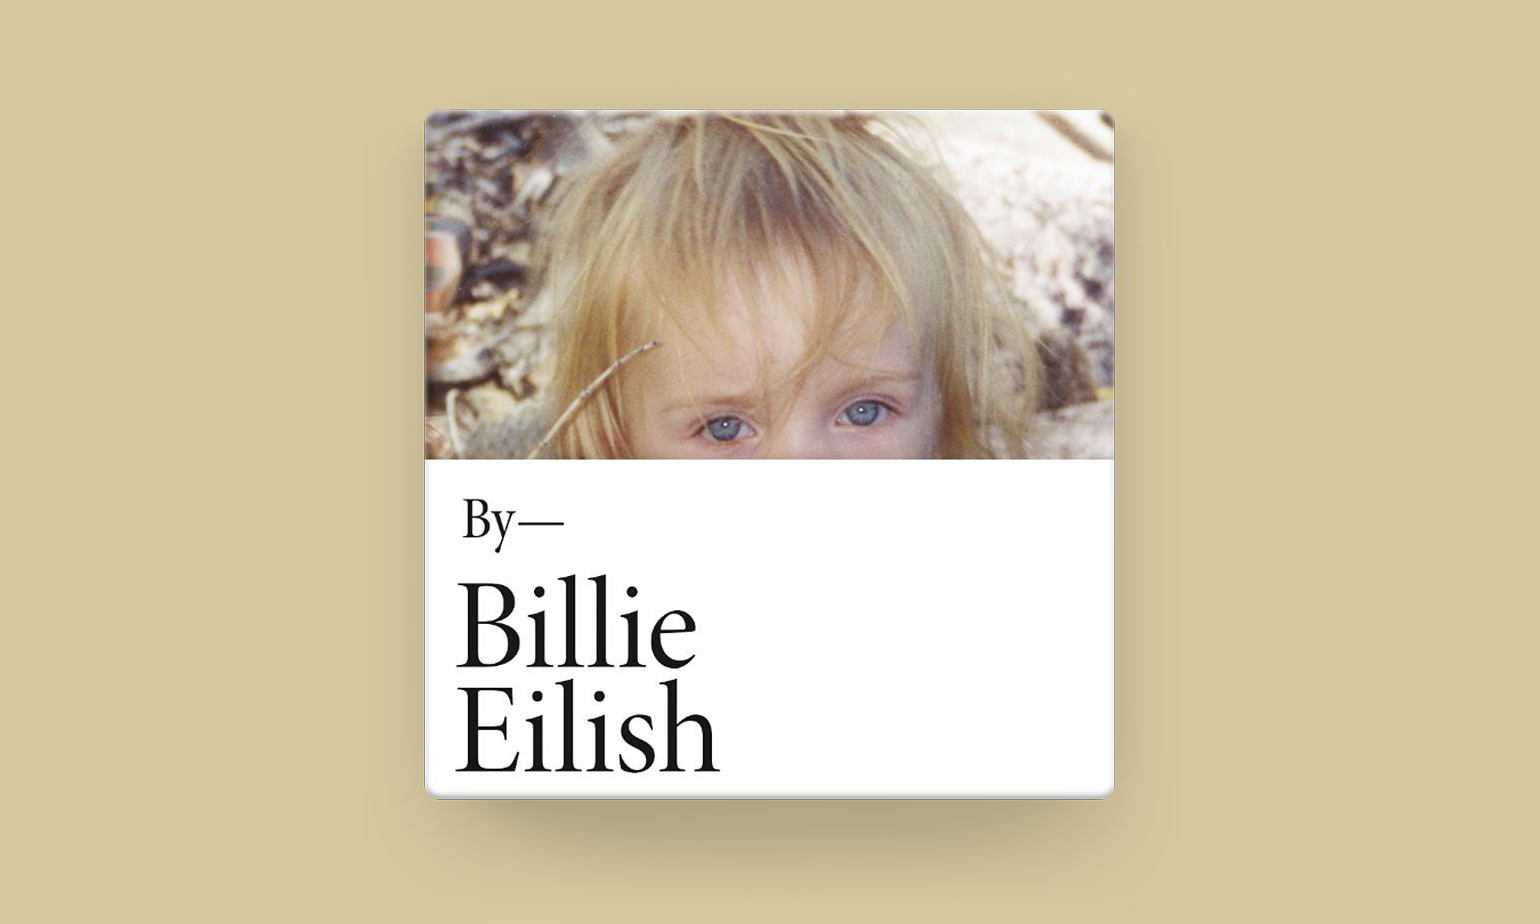 Billie Eilish 个人照片集正式发布